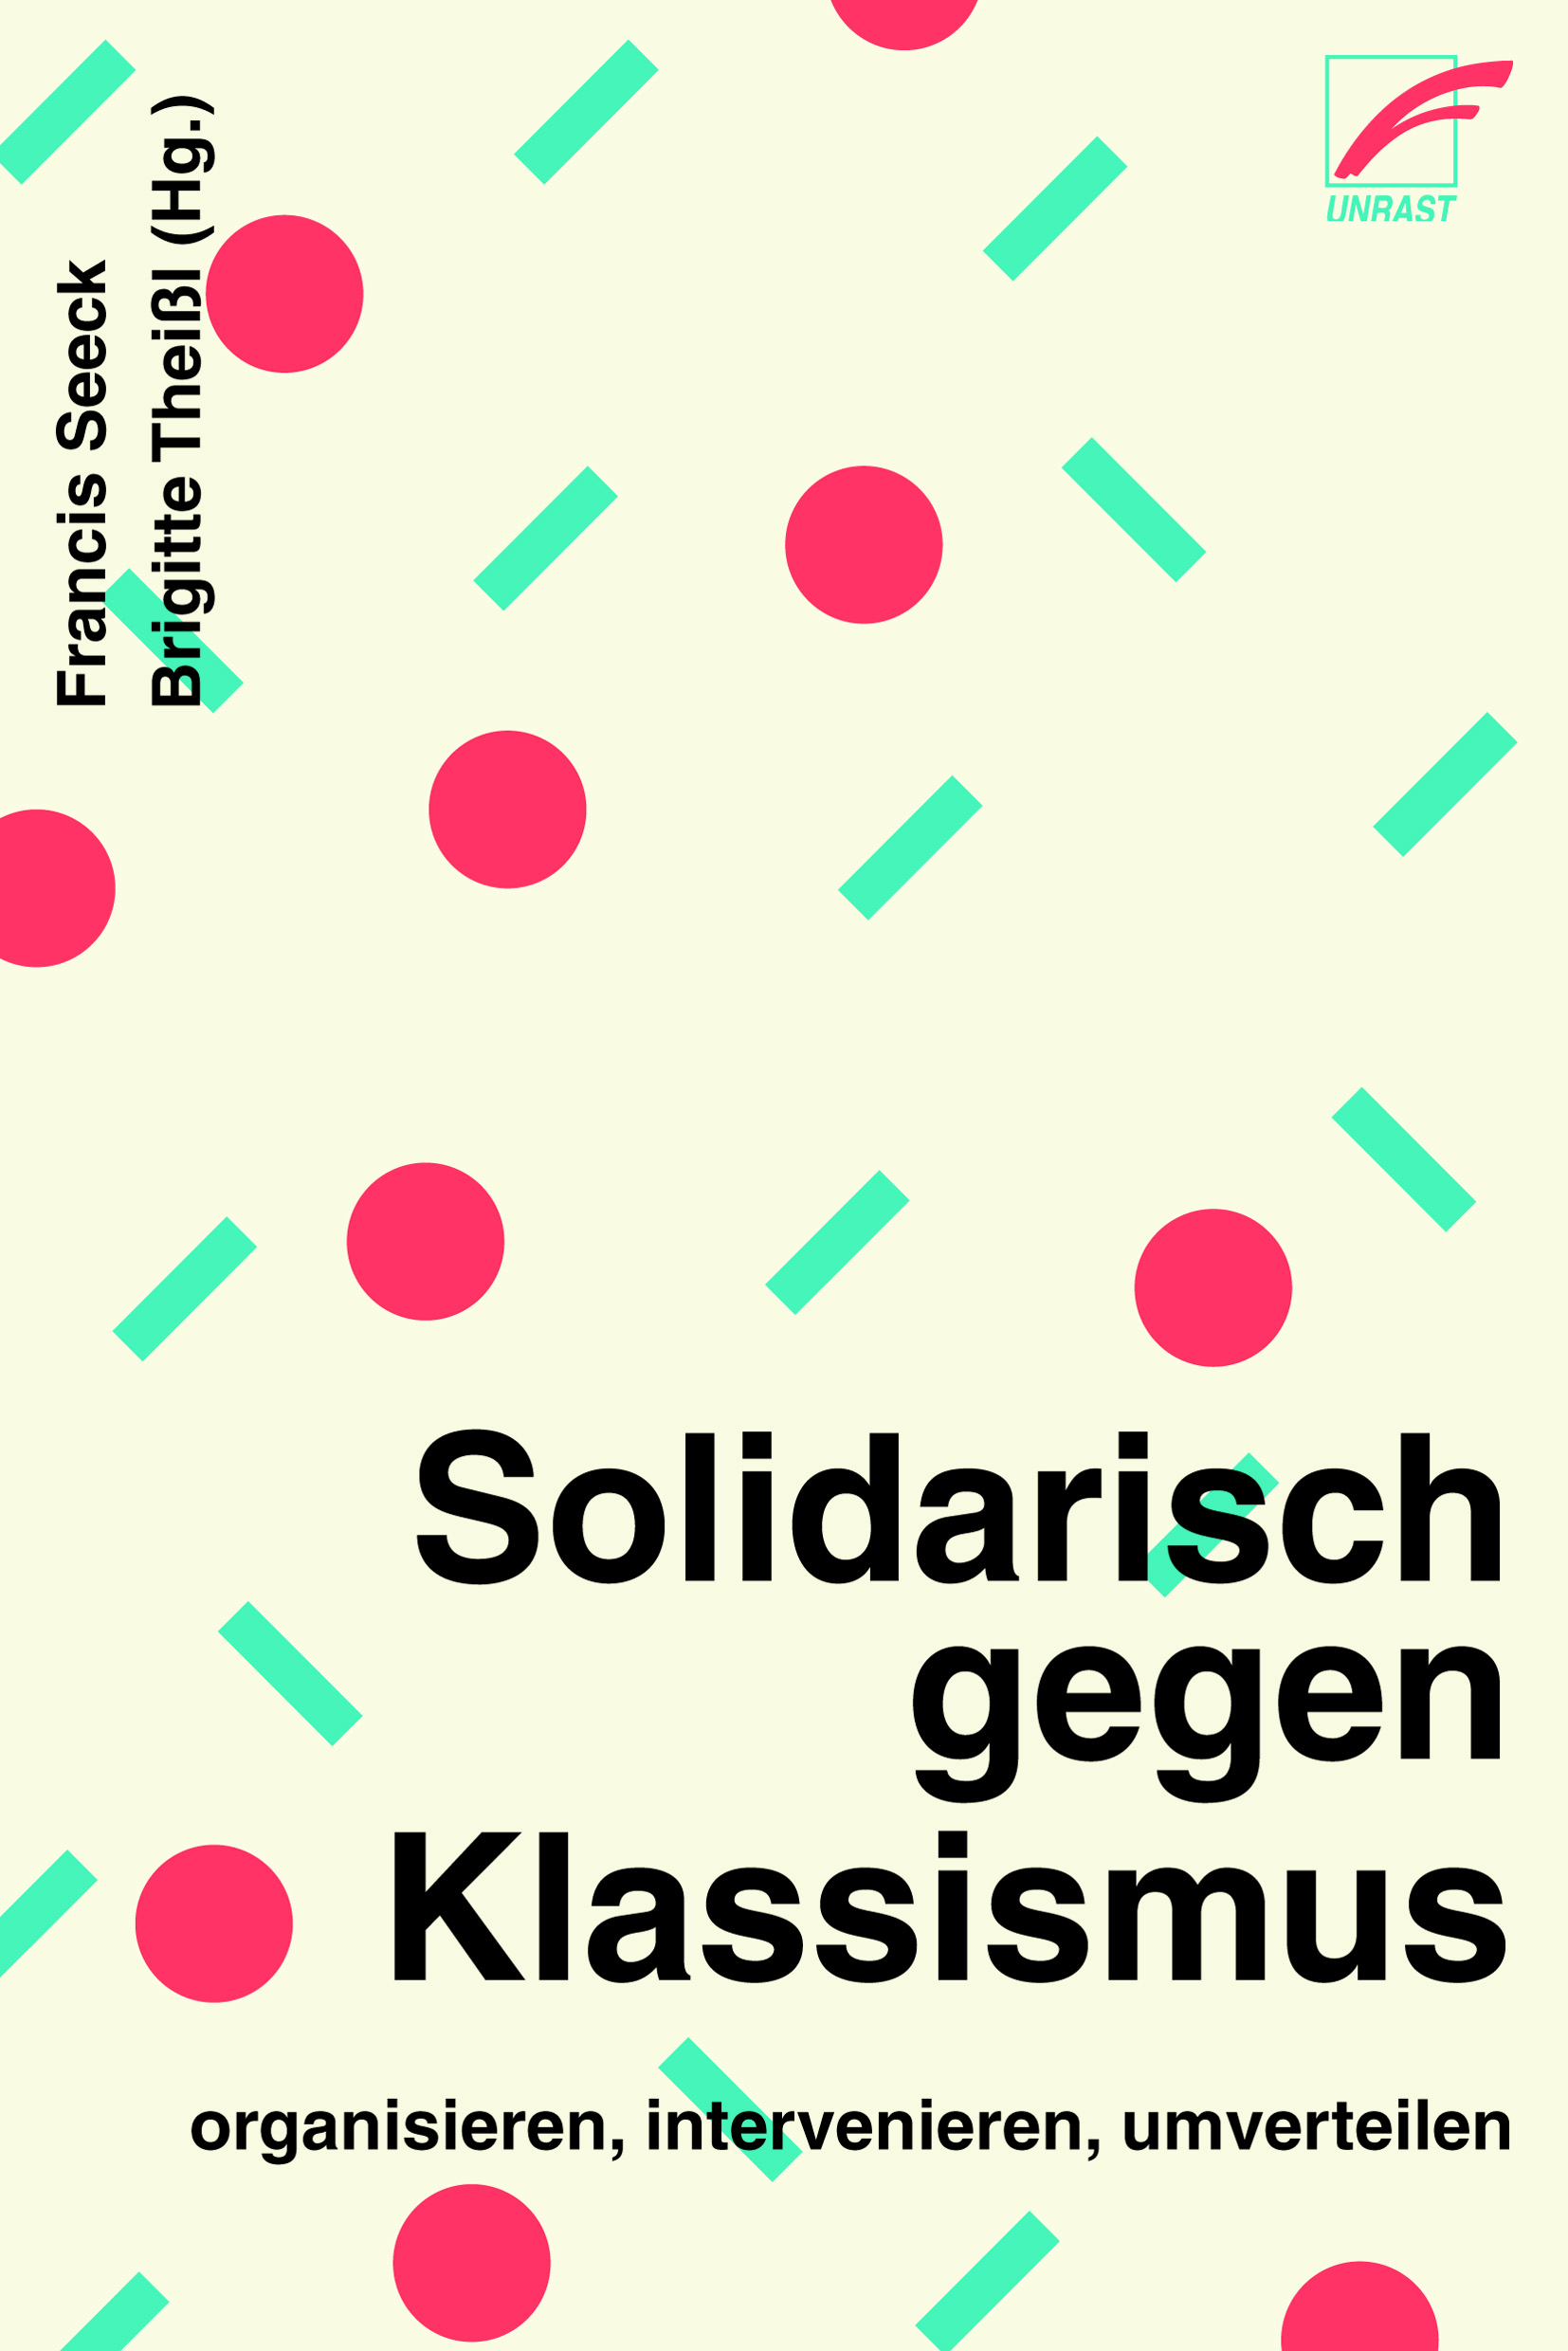 Solidarisch gegen Klassismus (EBook, German language, 2020, Unrast)